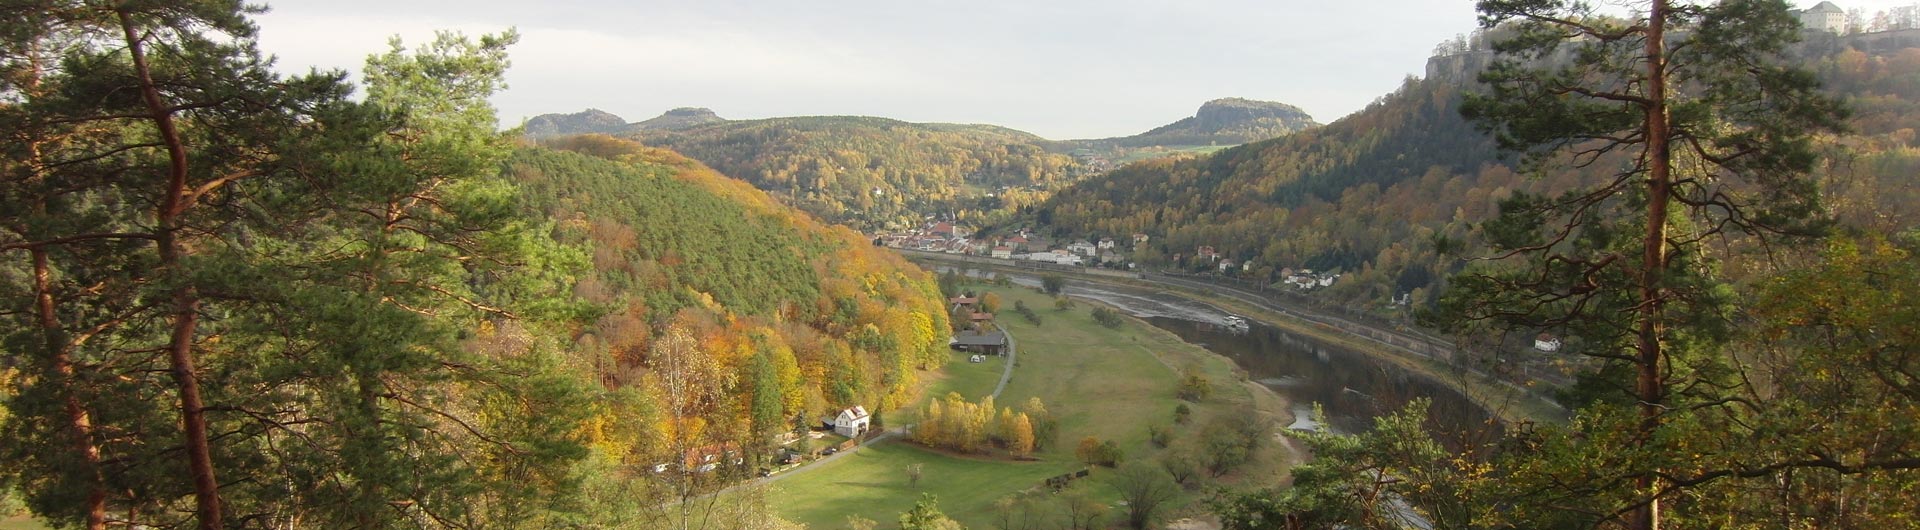 Herbst an der Elbe